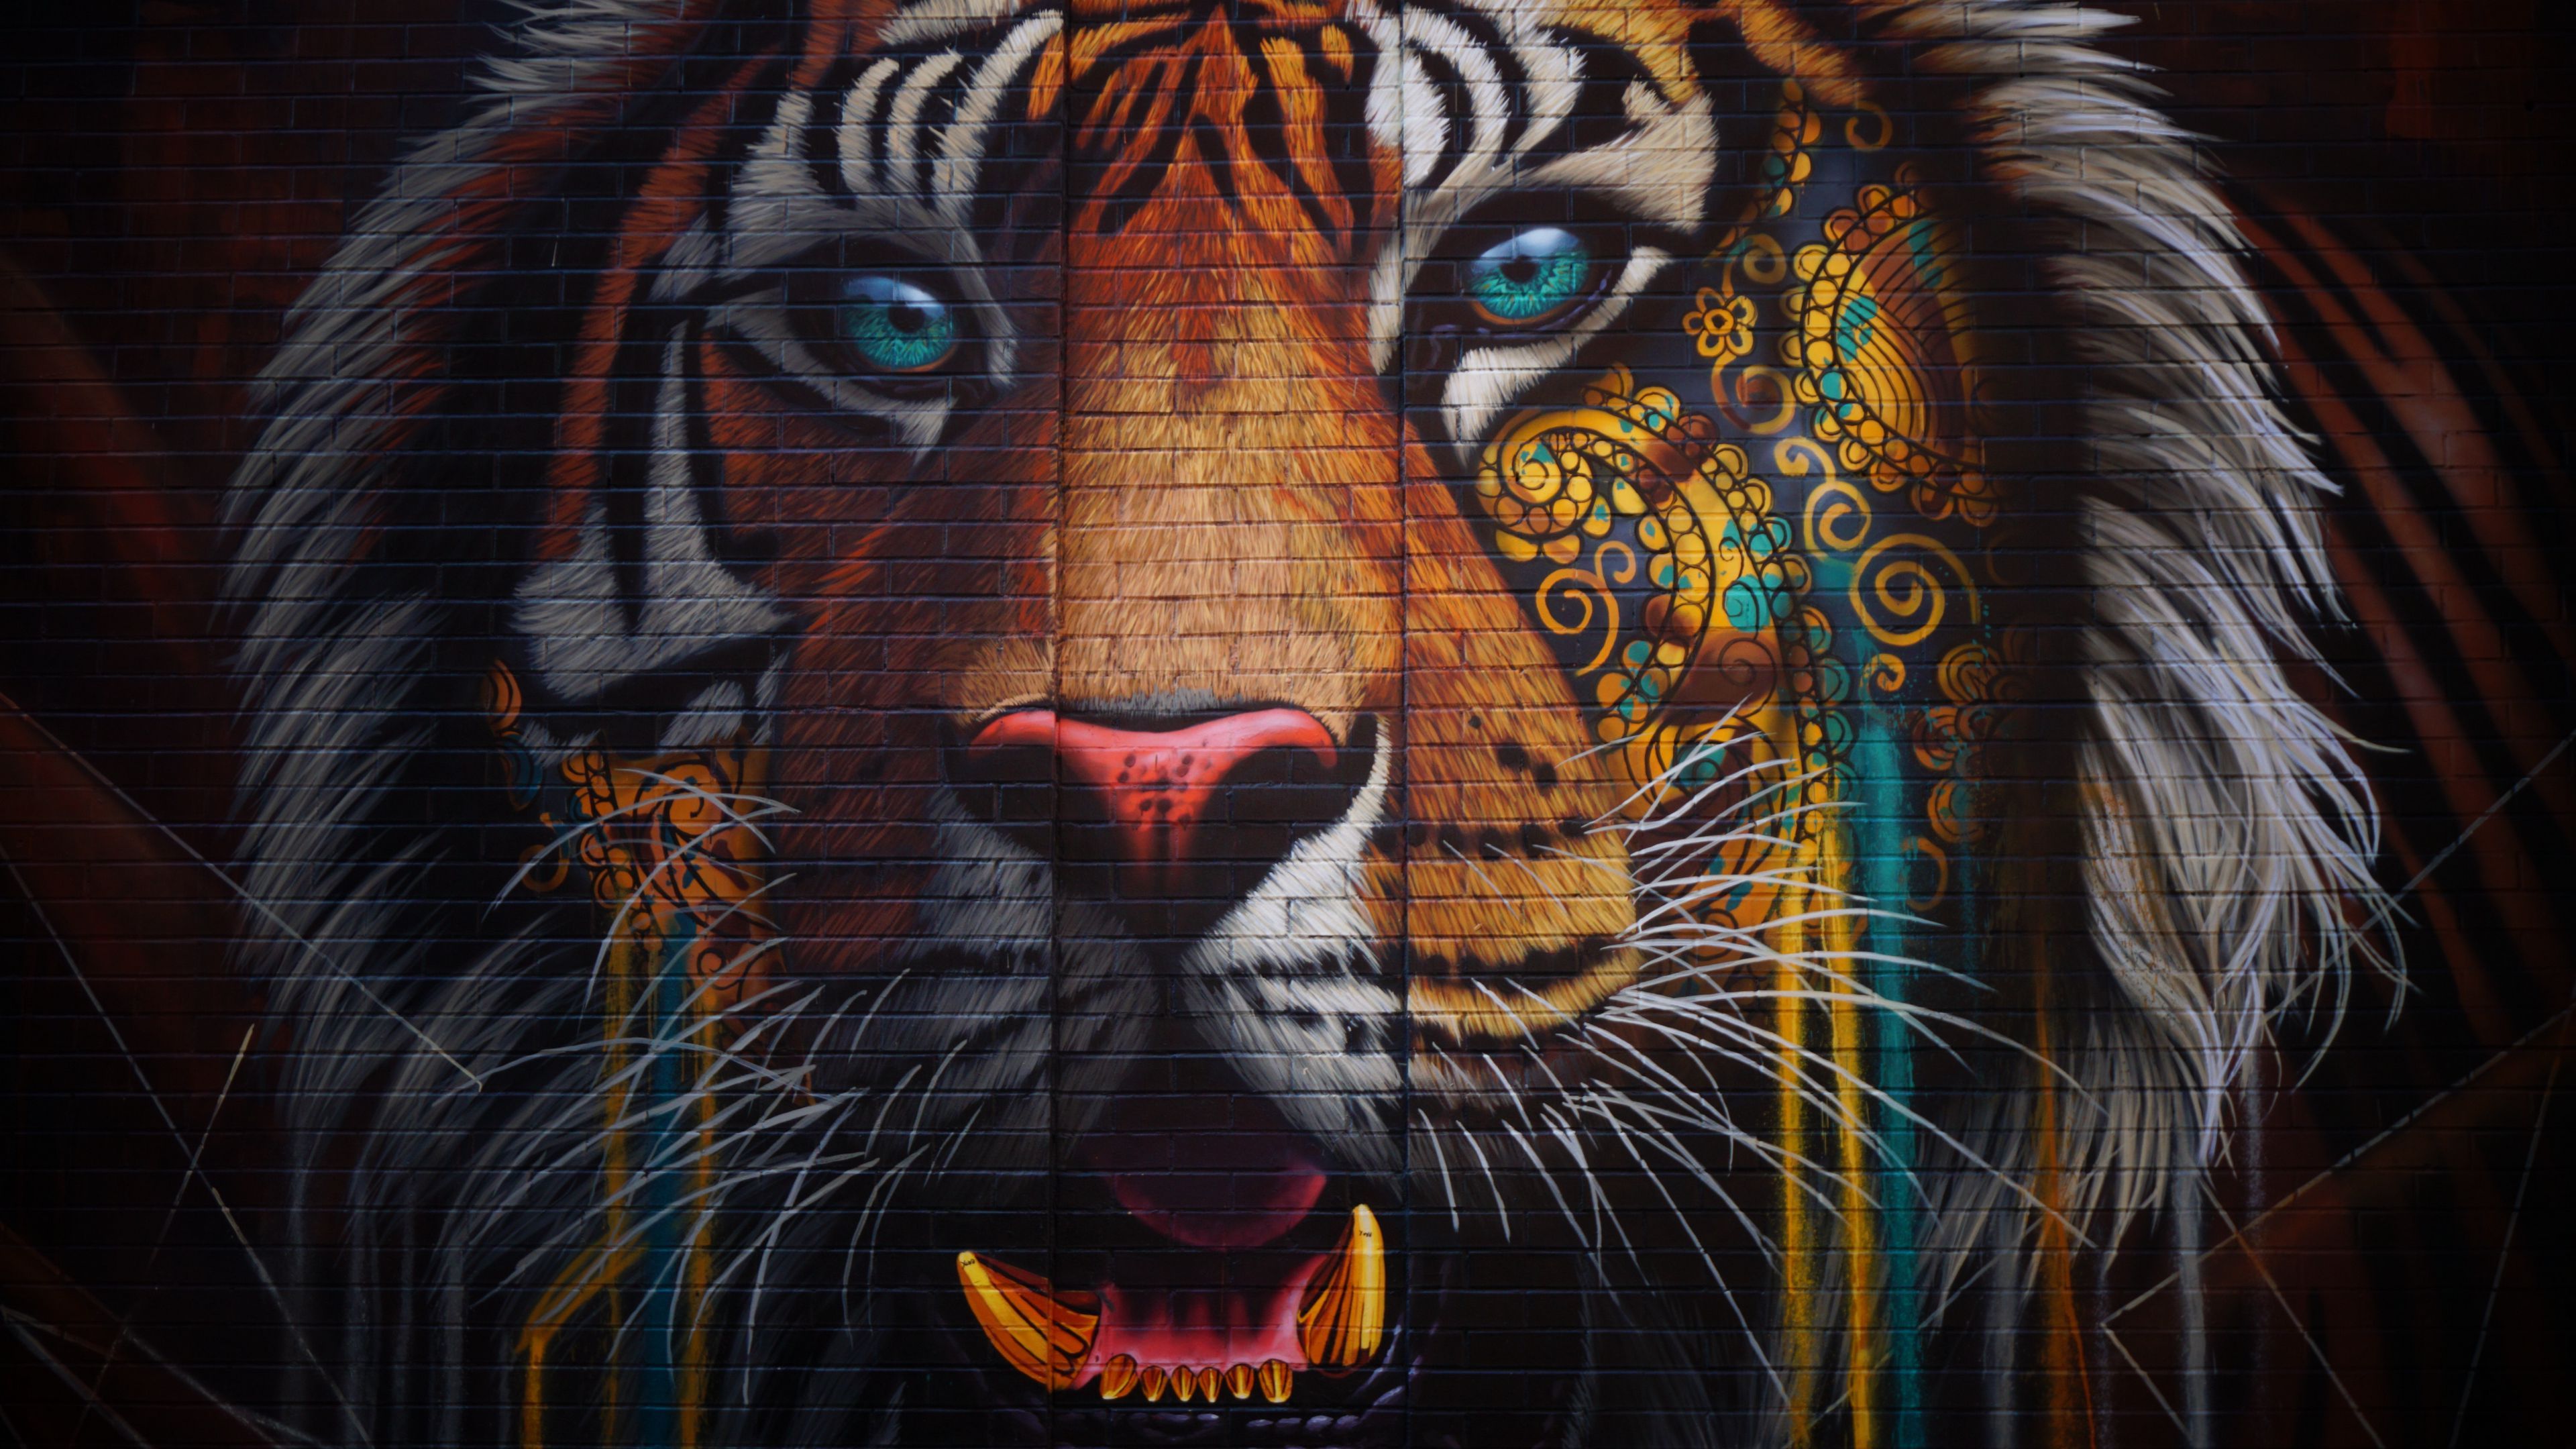 Download wallpaper 3840x2160 tiger, graffiti, street art, wall, colorful 4k uhd 16:9 HD background